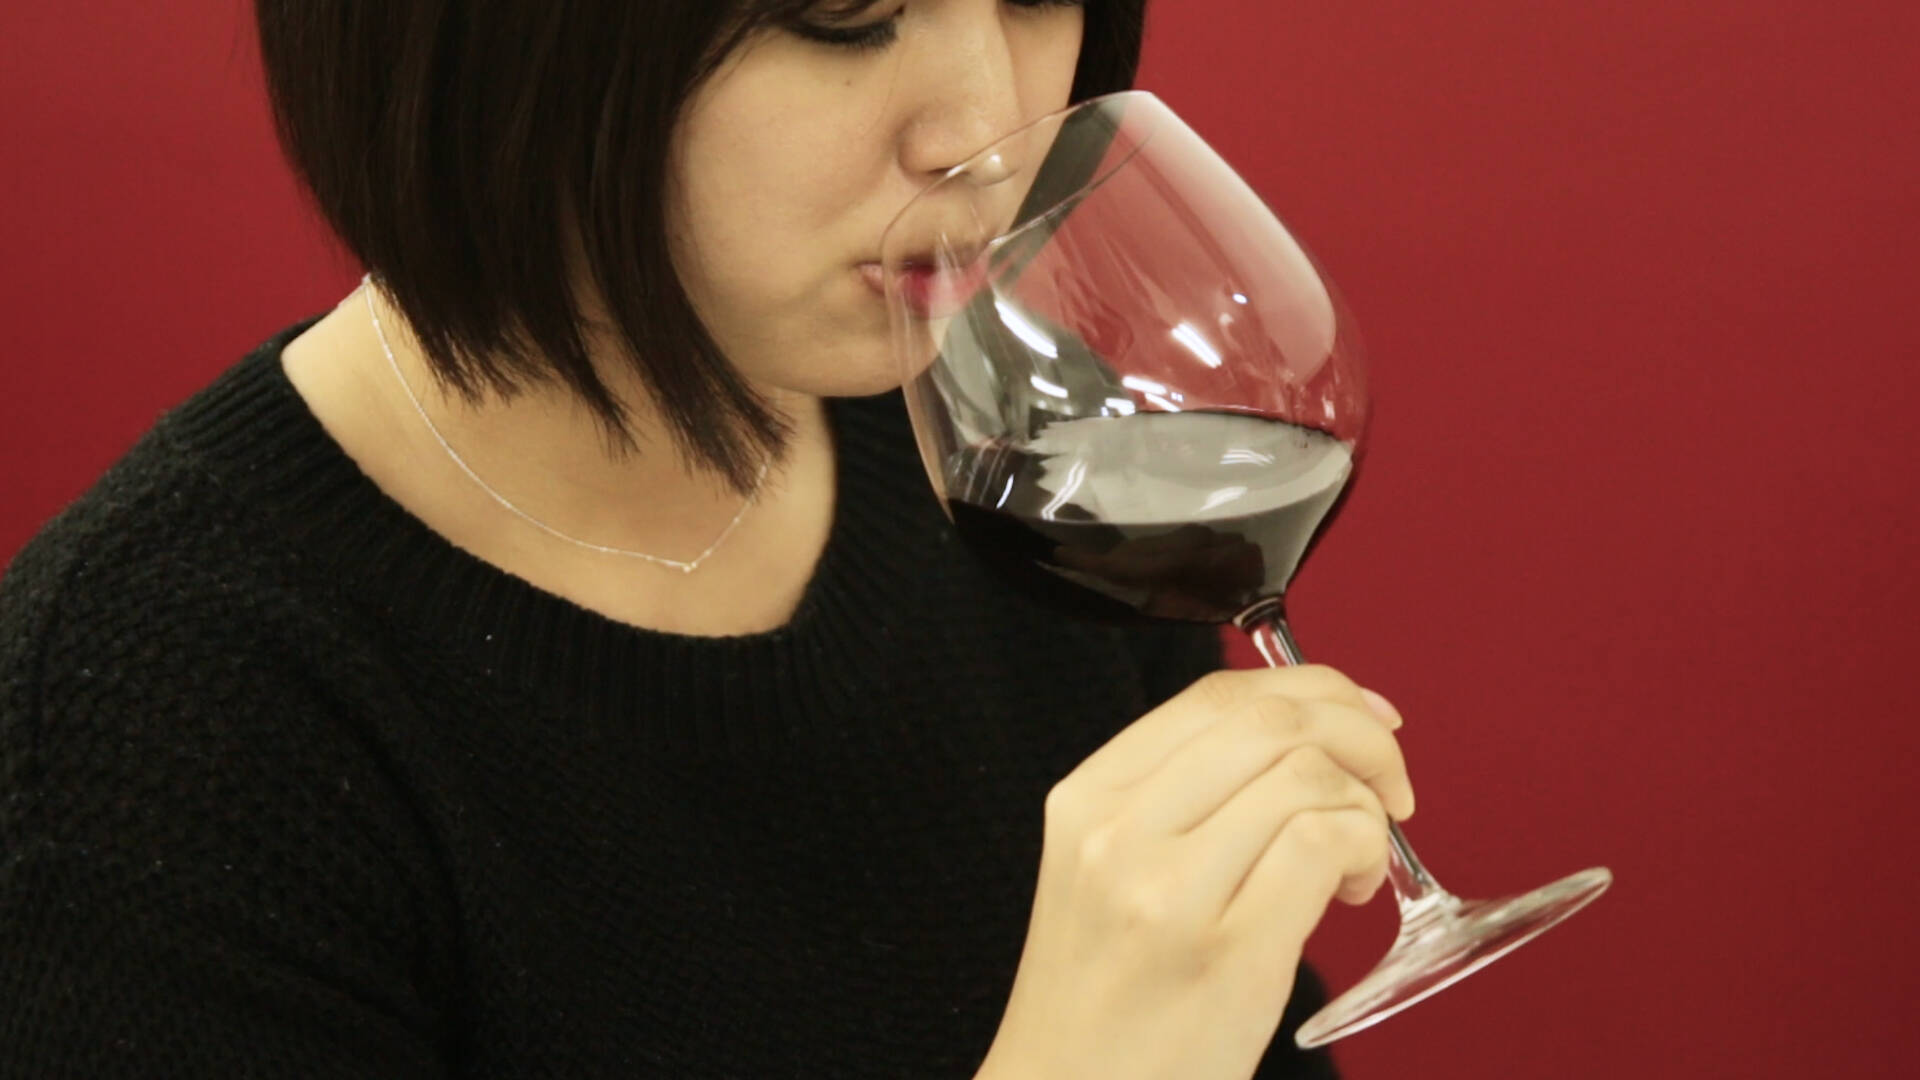 ワインの飲み方 正しいマナーと注ぎ方 持ち方を詳しく解説 19年11月日 エキサイトニュース